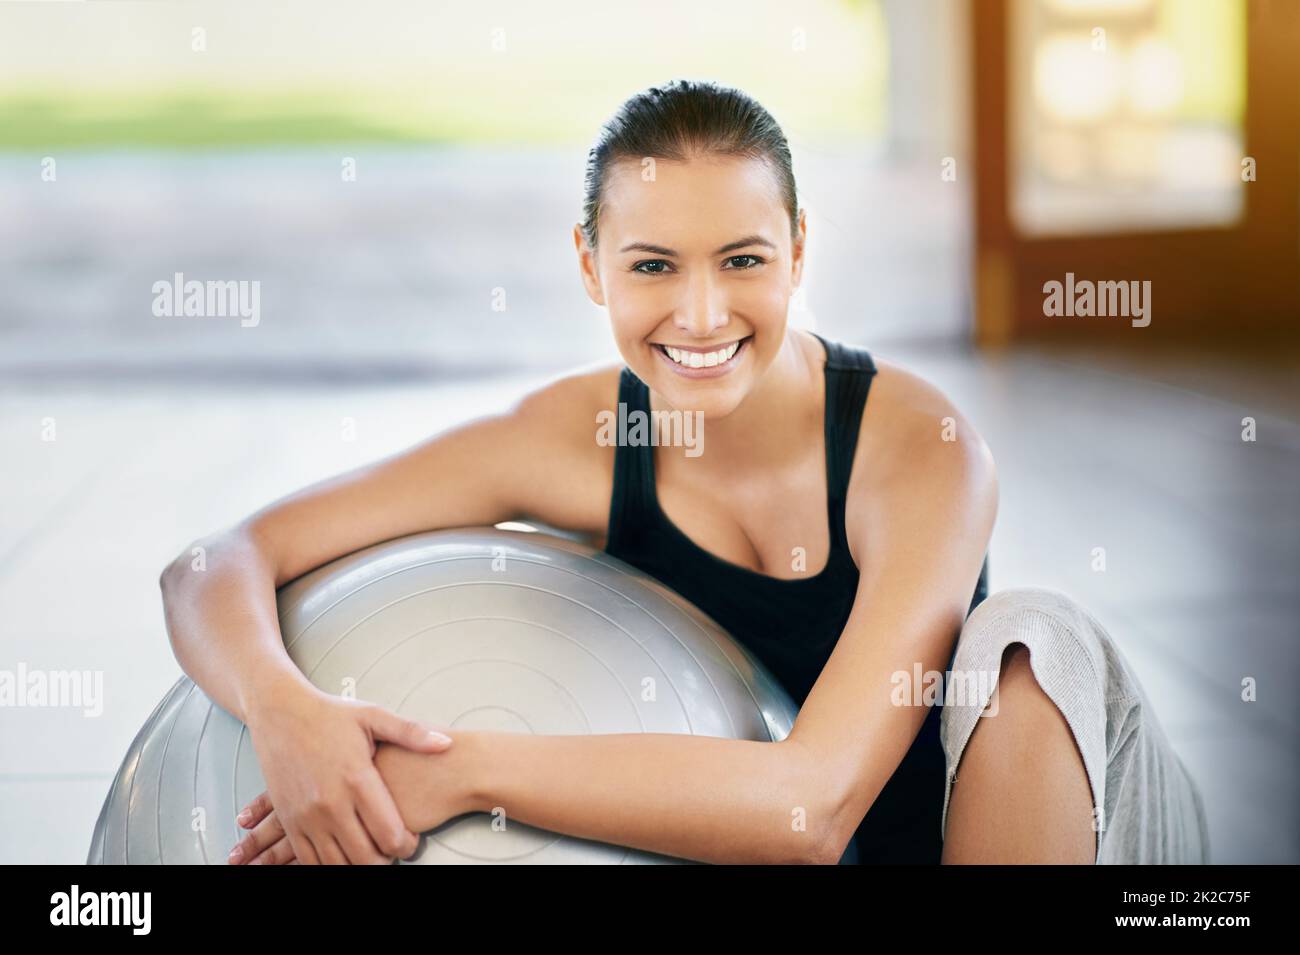 Was für ein tolles Workout. Beschnittenes Porträt einer jungen Frau, die gegen ihren Übungsball sitzt. Stockfoto